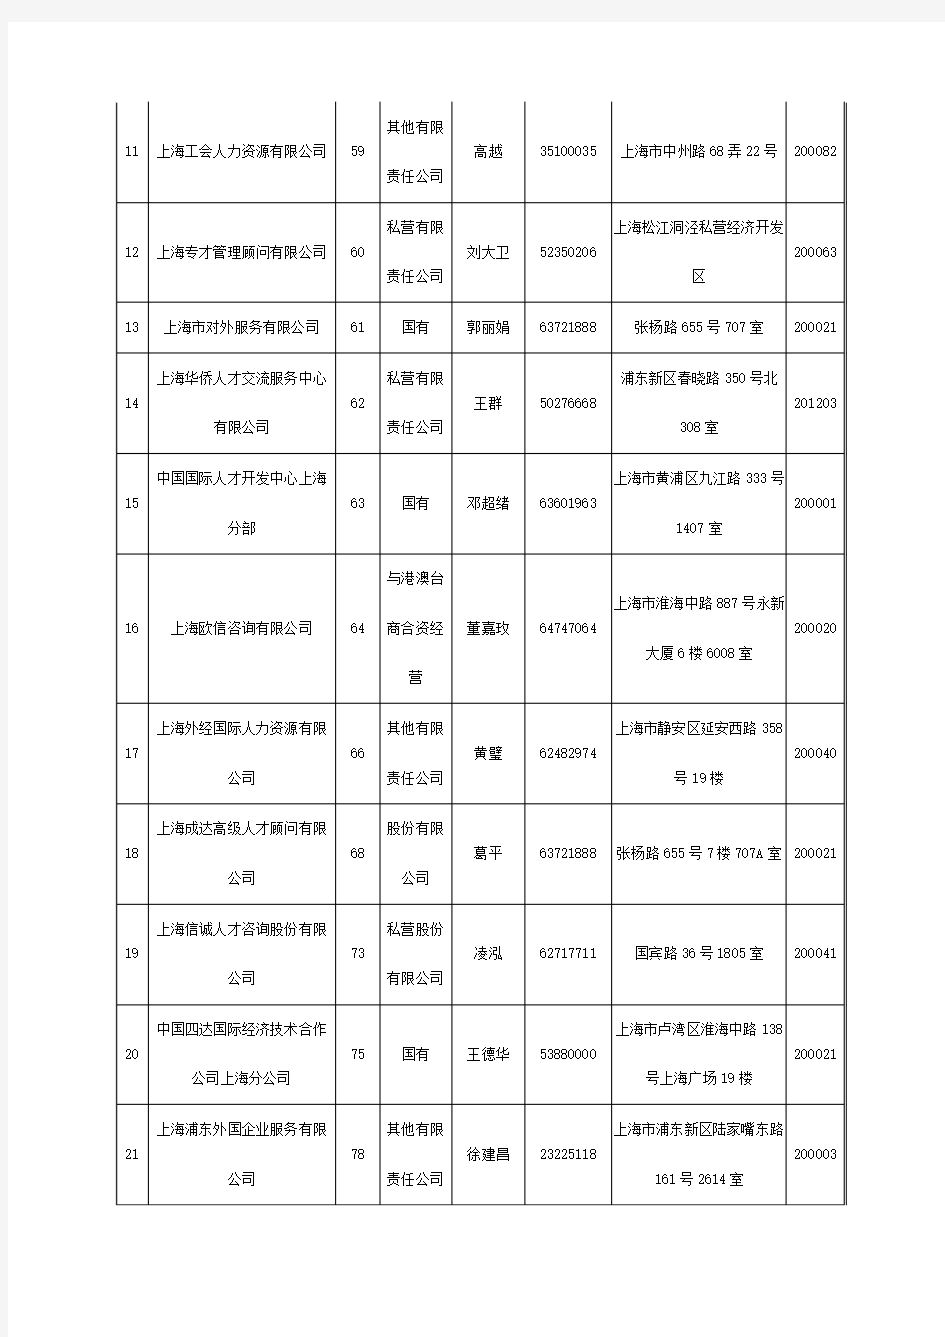 上海2011年正式公布的人才中介机构一览表